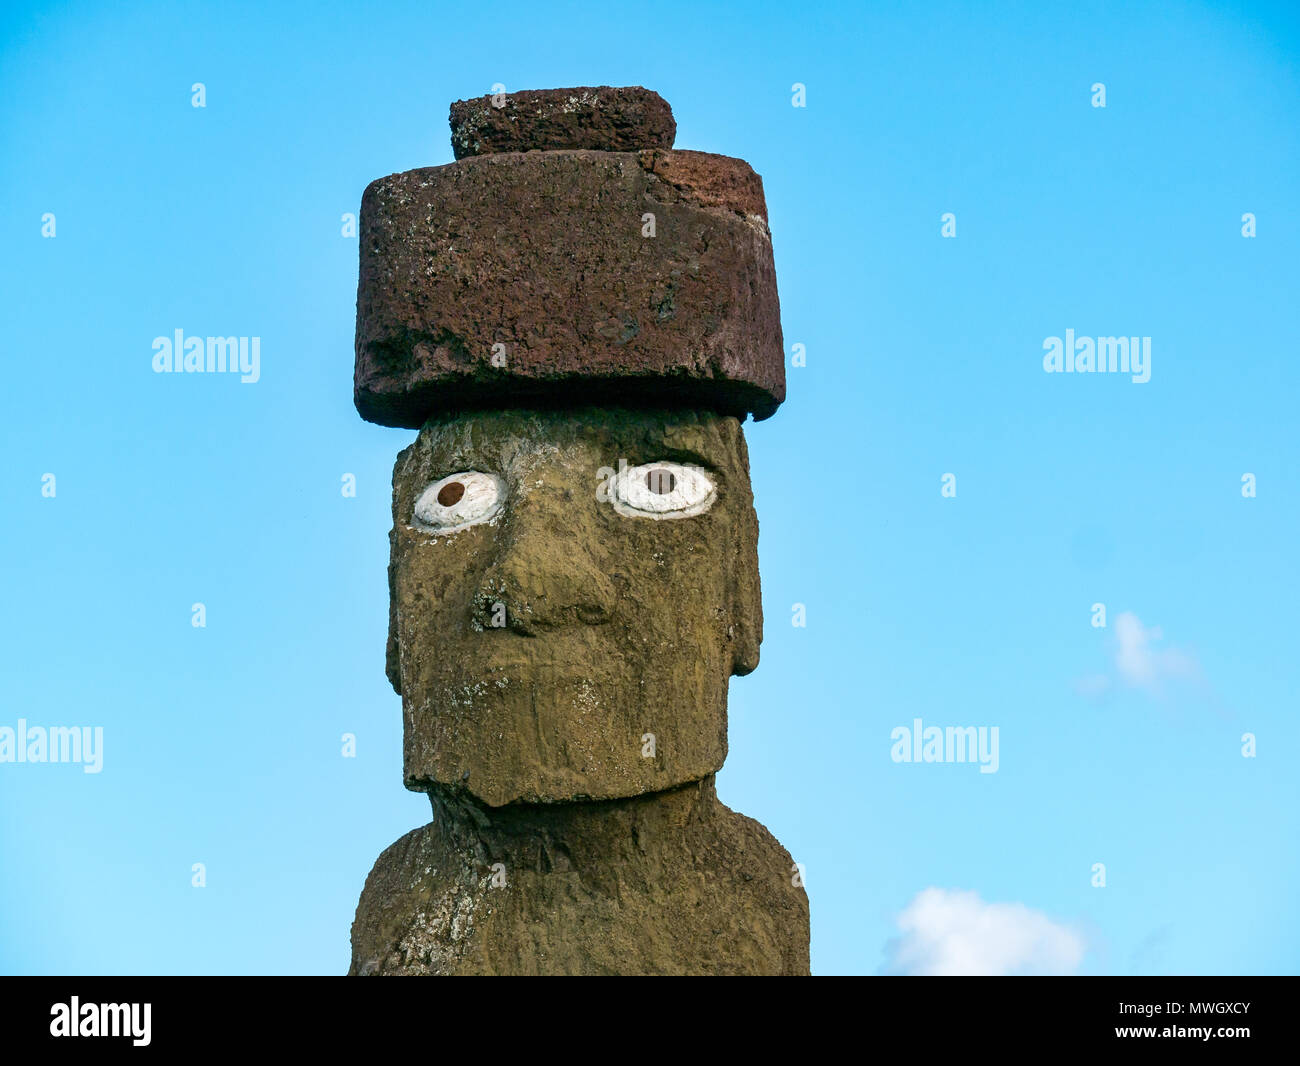 Close up of Ahu Ko Te Riku, part of Ahu Tahai Moai complex, Hanga Roa, Easter Island, Chile Stock Photo